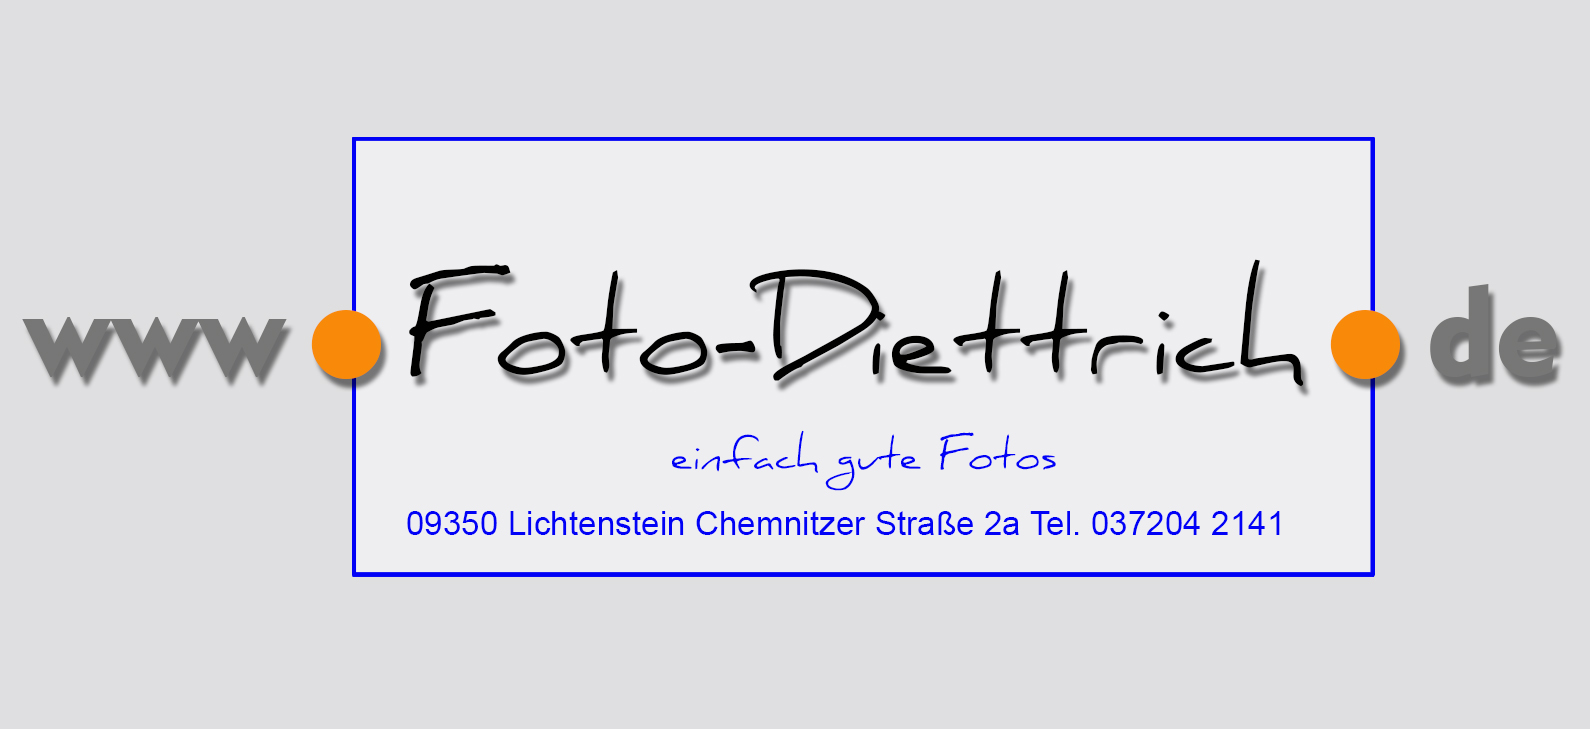 Foto-Diettrich